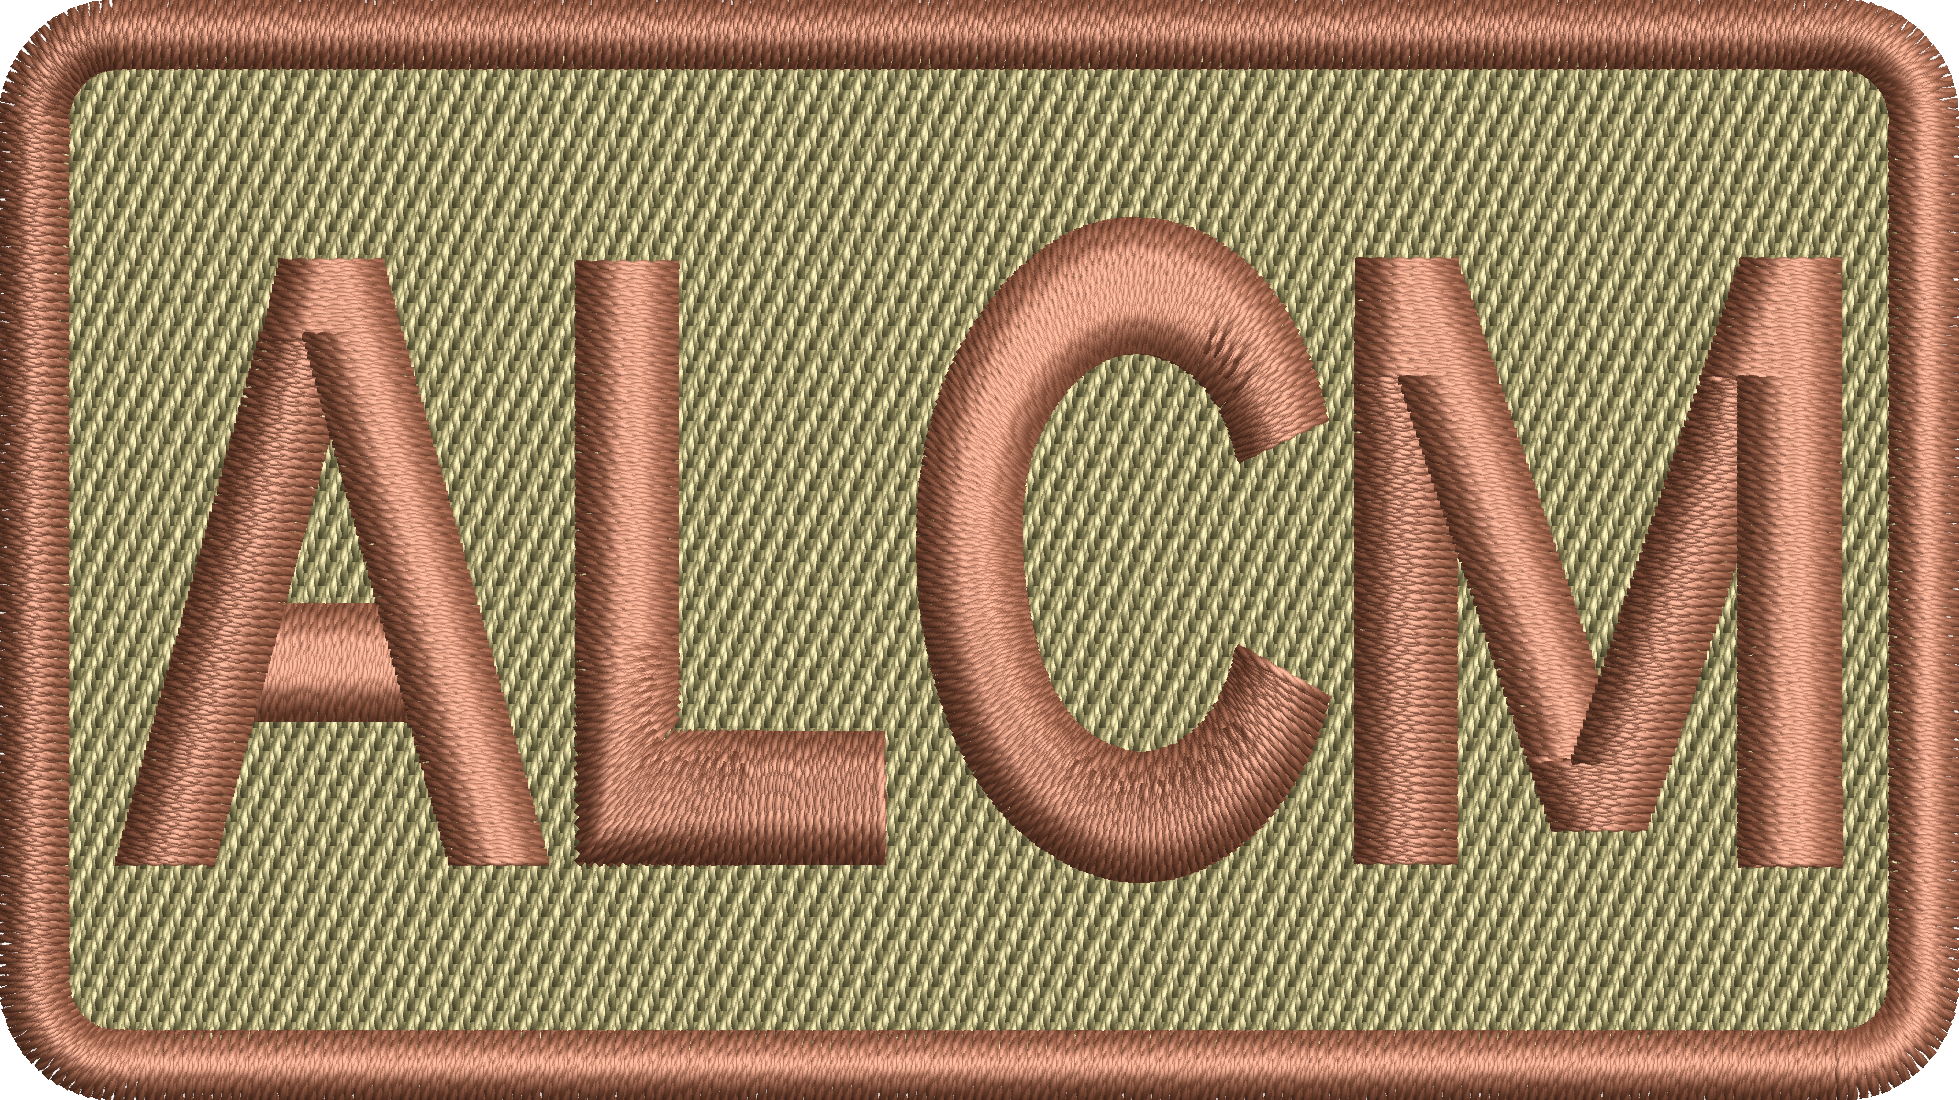 ALCM - Duty Identifier Patch